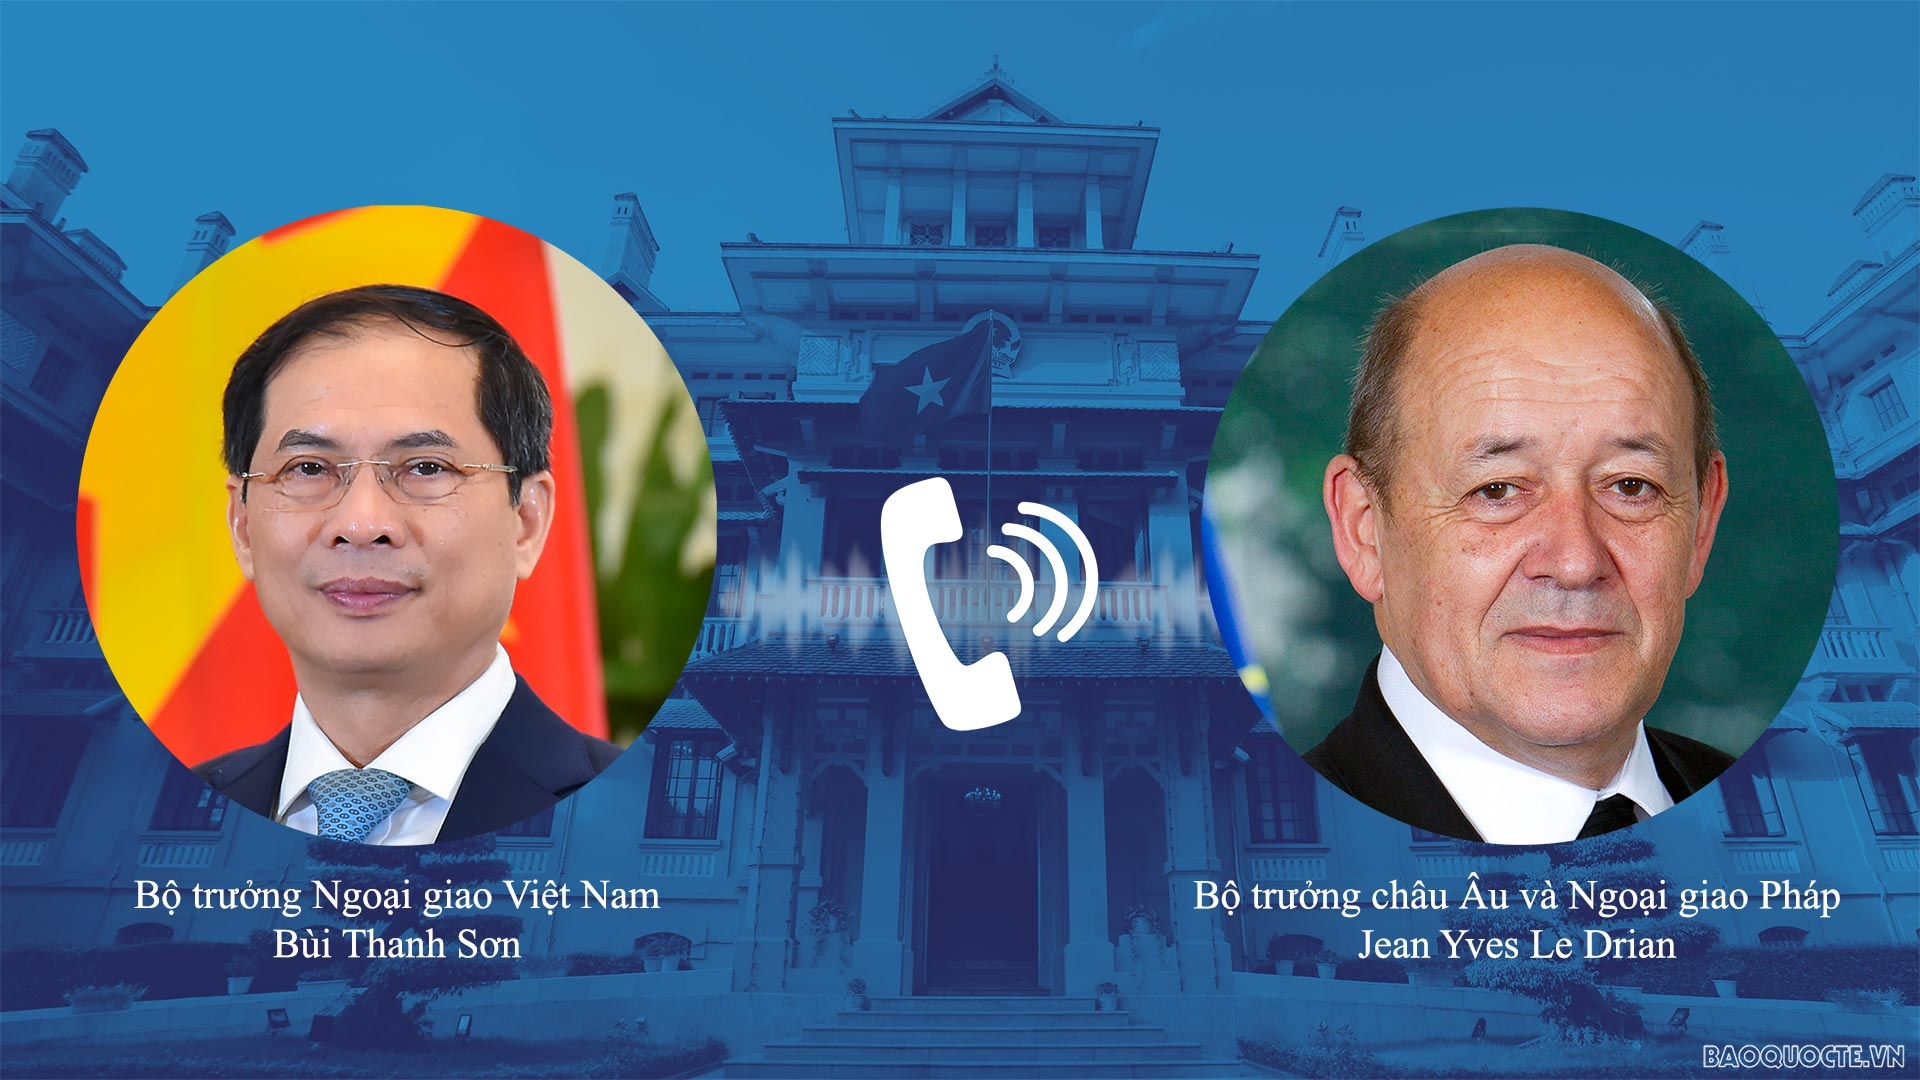 Ngoại giao trong tuần: Bộ trưởng điện đàm với Bộ trưởng châu Âu và Ngoại giao Pháp; Tọa đàm về quan hệ ASEAN-Nhật Bản